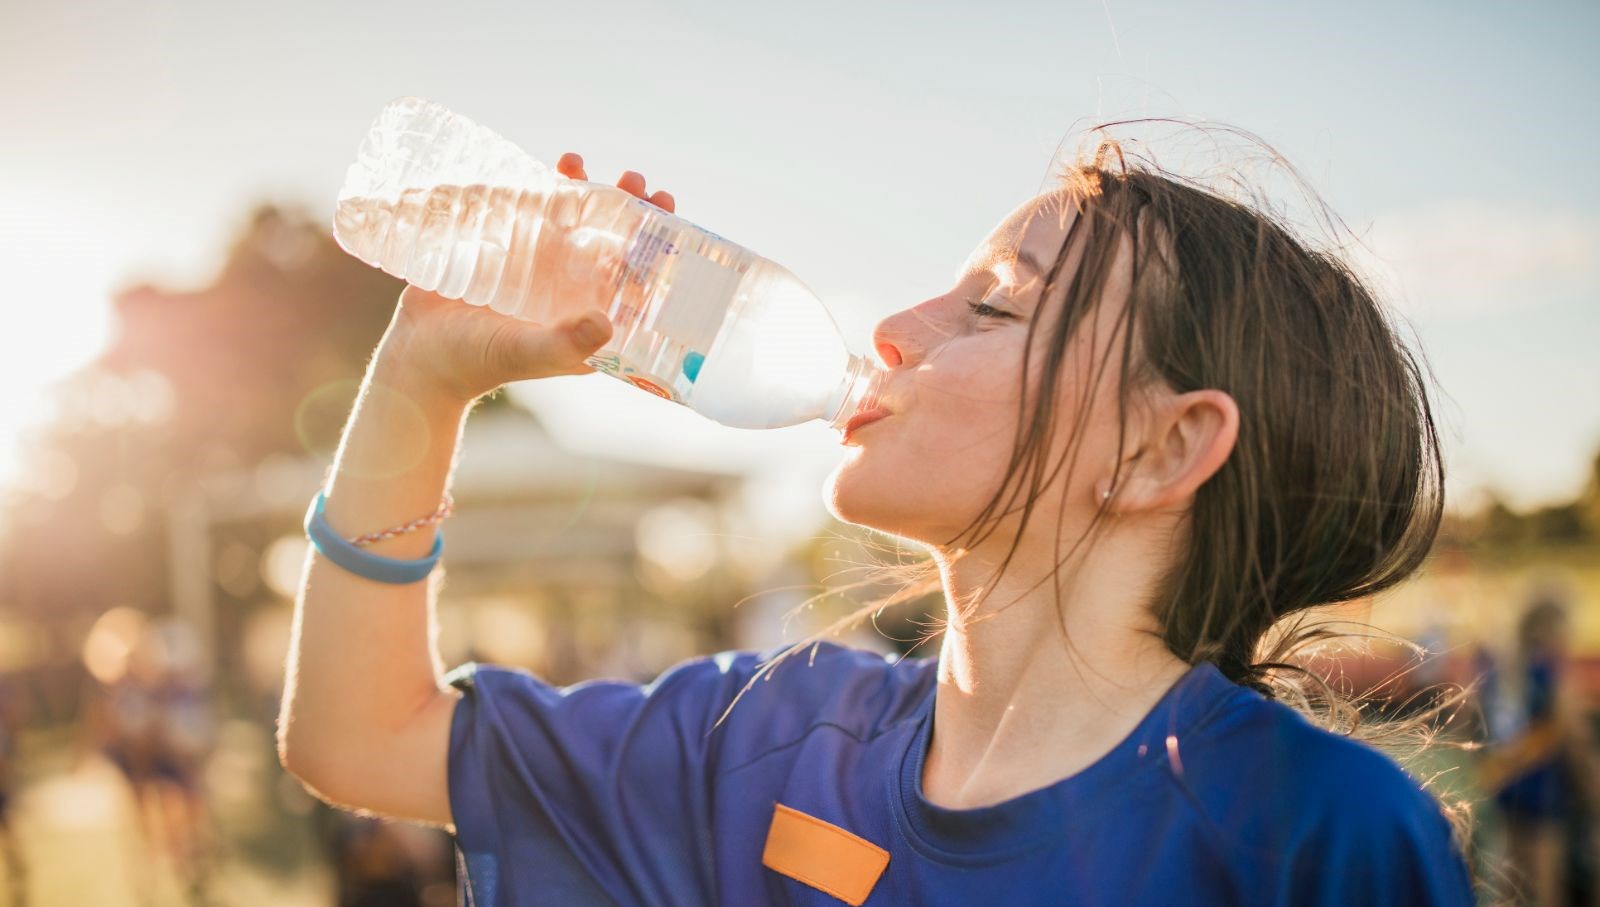 ABD’de bir bayan 20 dakika içinde 2 litre su içtikten sonra öldü